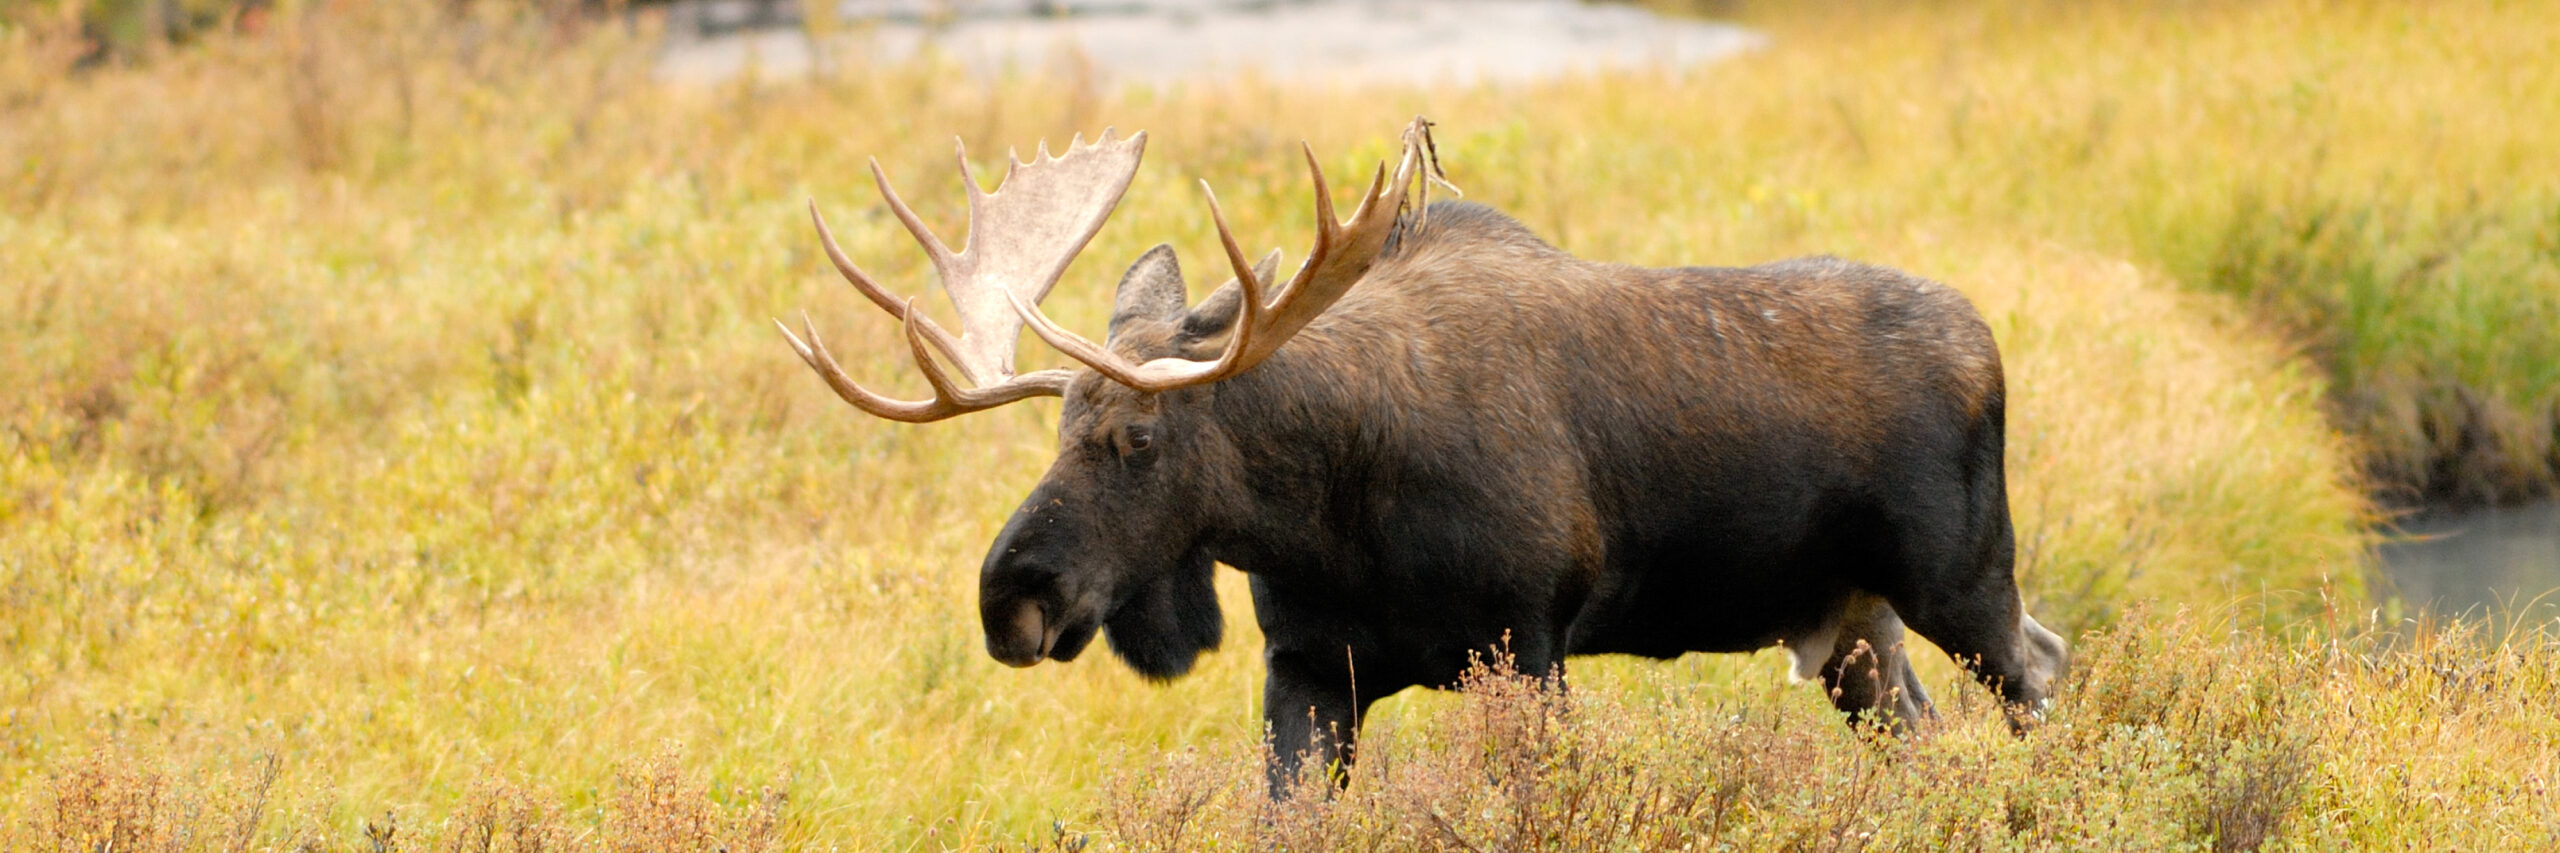 western-canada-moose